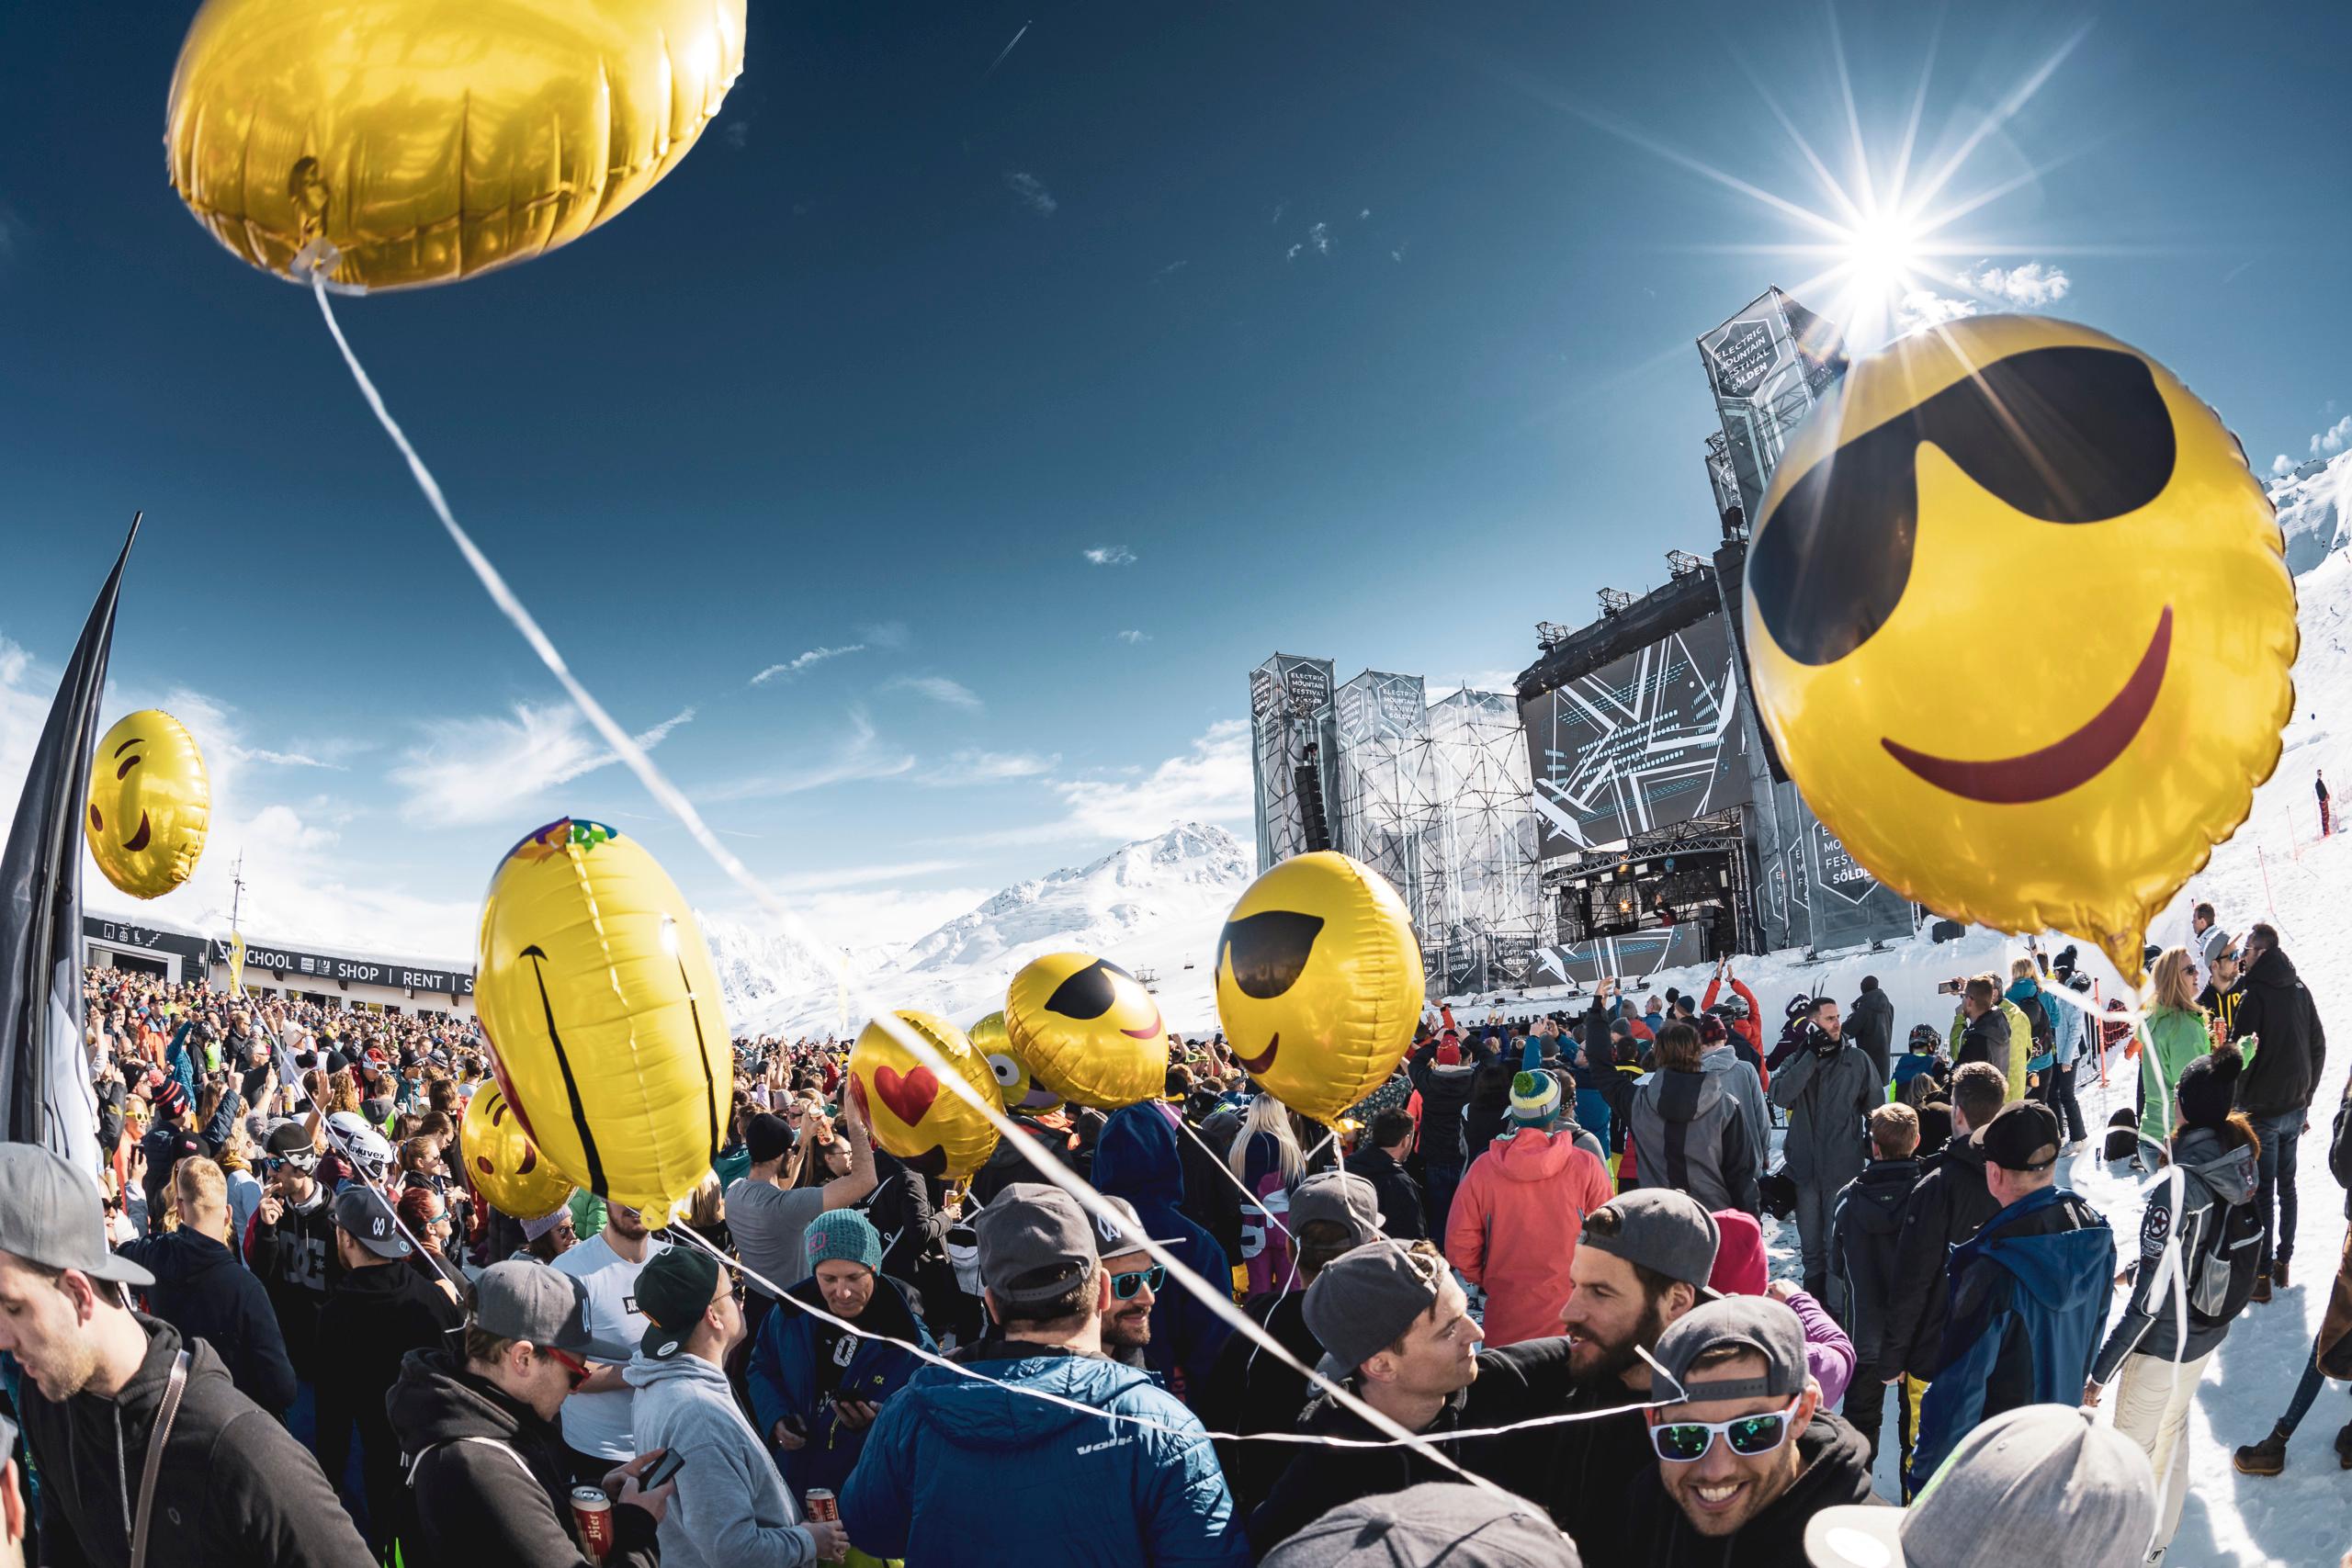 Das Electric Mountain Festival zählt zu den beliebtesten Veranstaltungen im Skigebiet Sölden